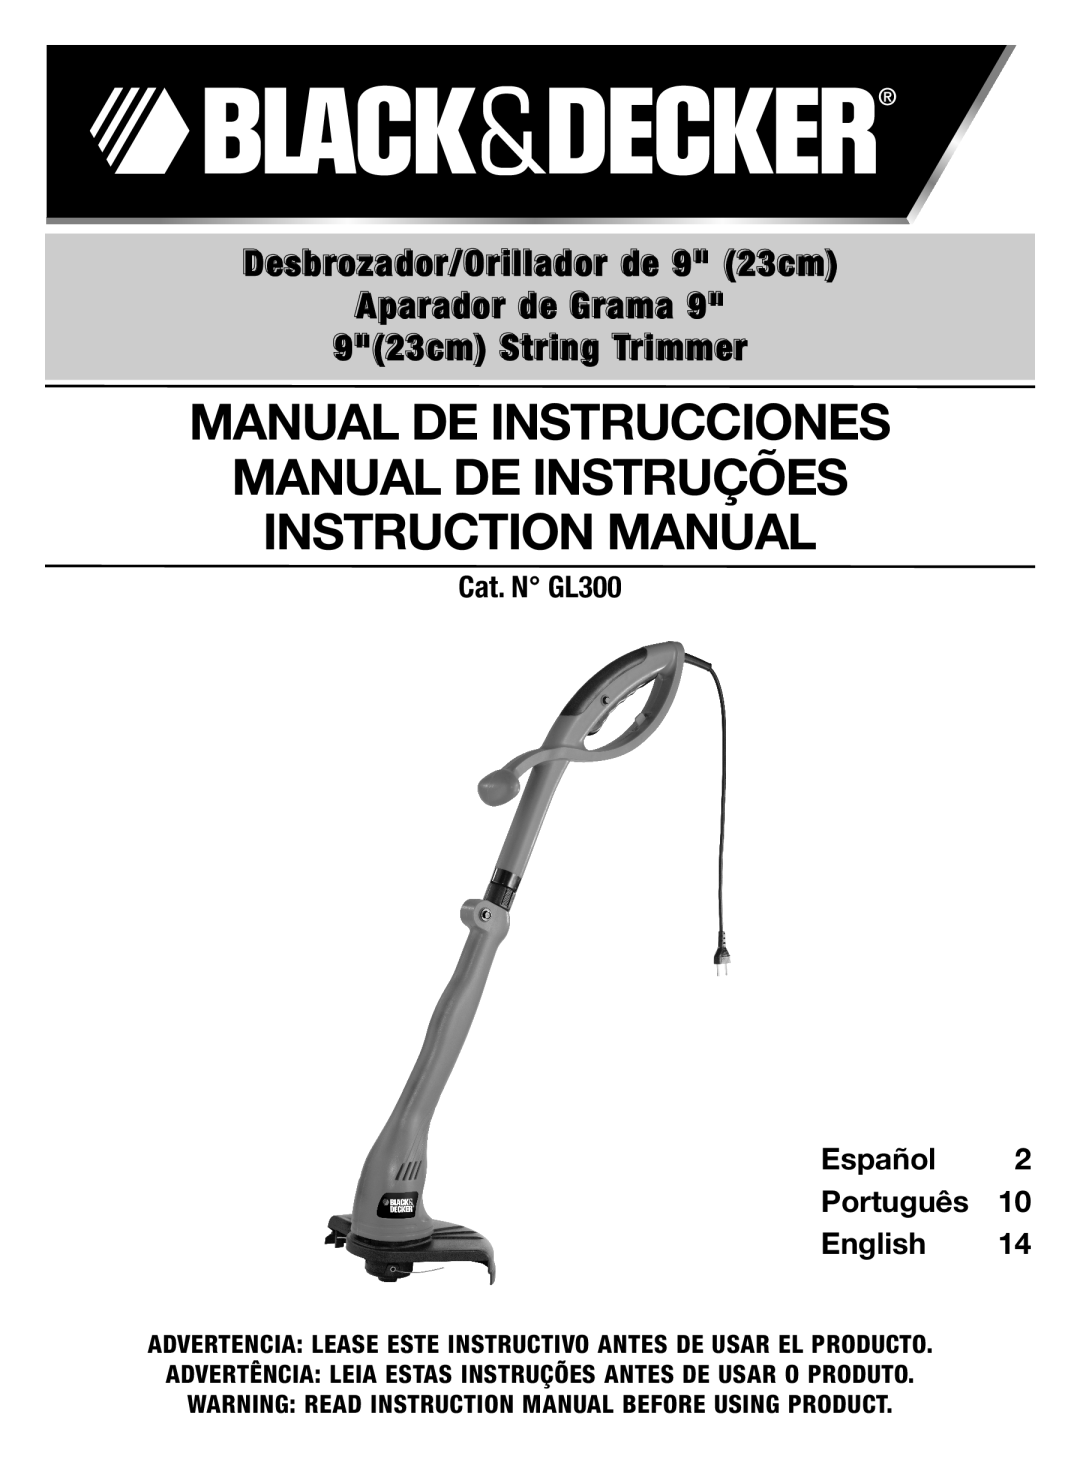 Black & Decker GL300 instruction manual Manual De Instrucciones Manual De Instruções, Instruction Manual 